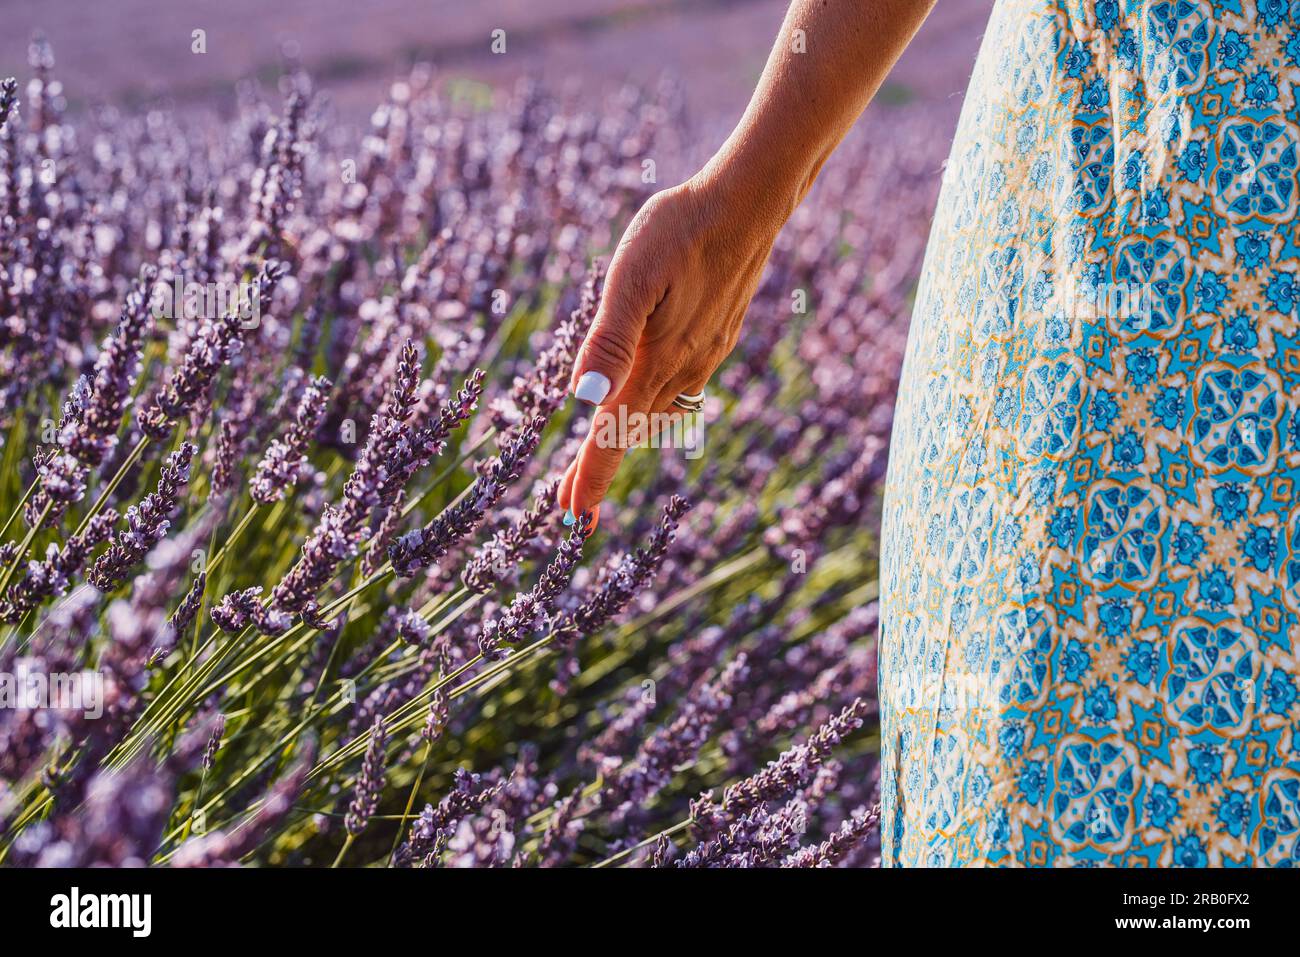 Nahaufnahme einer touristischen Frau, die sanfte Lavendelblumen auf einem Feld anfasst und den Kontakt und das Gefühl der Natur genießt. Urlaubsziel für Sommerreisen. Freizeitaktivitäten und Tourismus im Freien Stockfoto